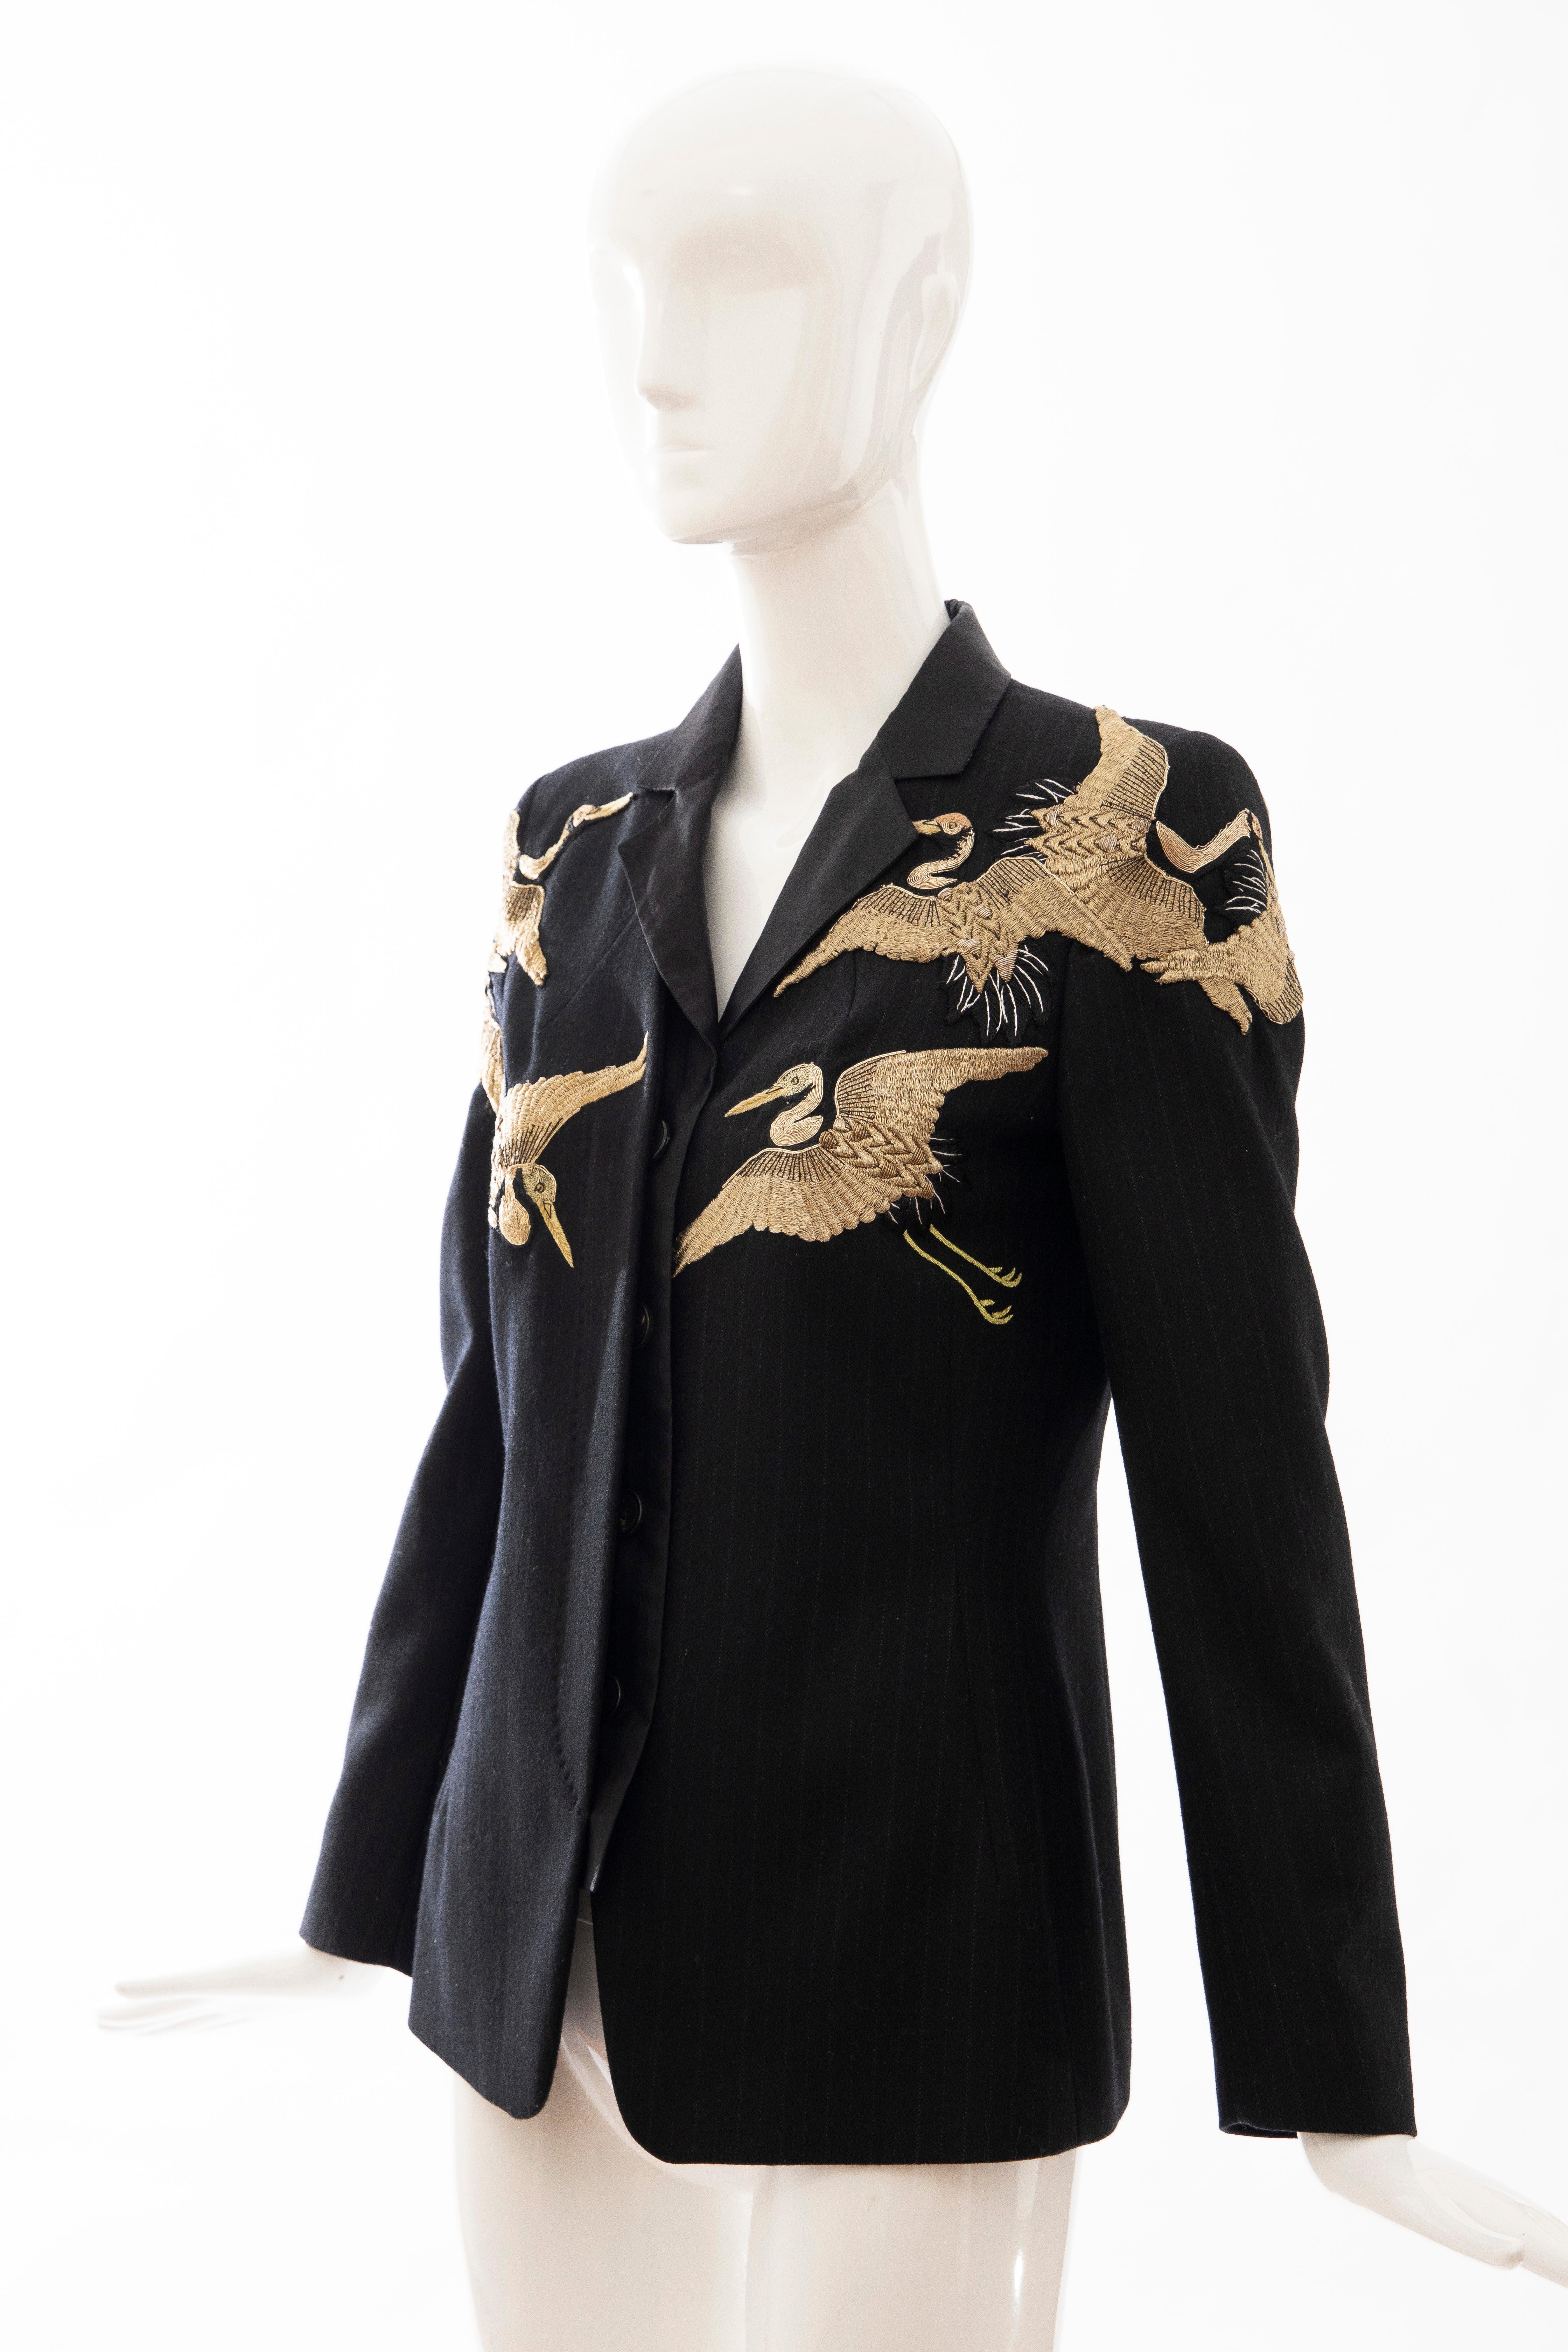 Dries van Noten Runway Black Wool Pinstripe Embroidered Jacket, Fall 2012 5